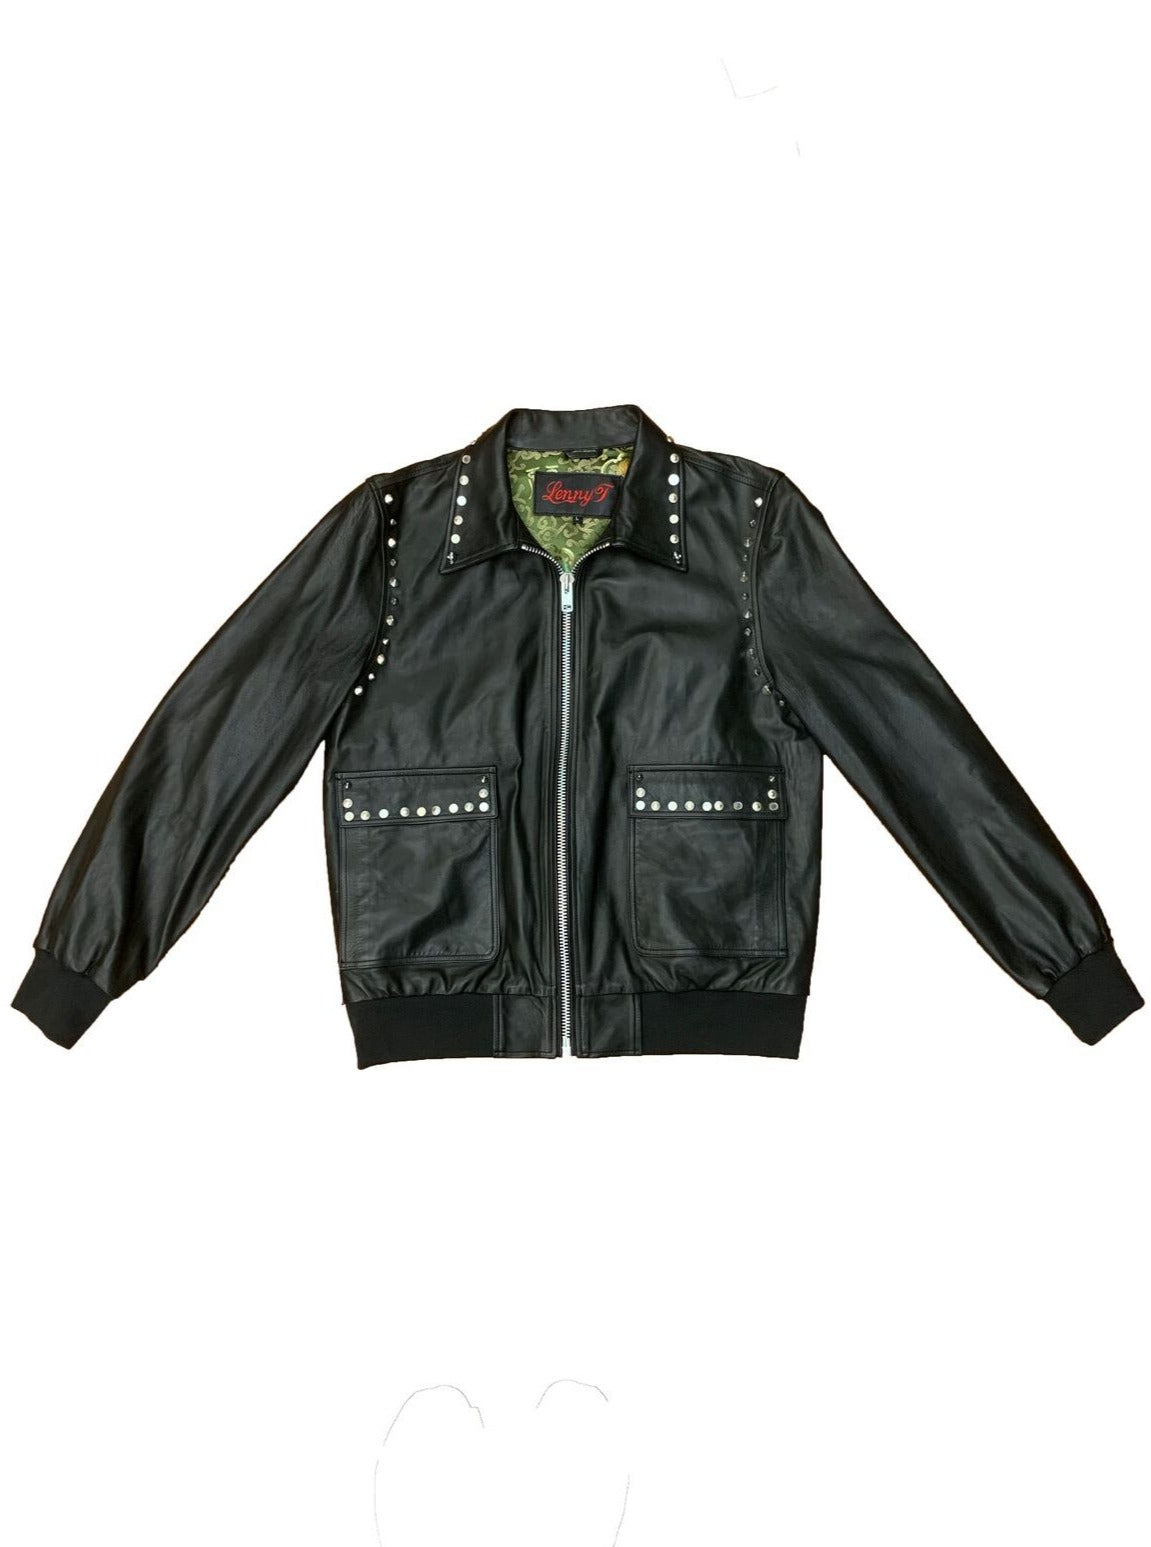 Studded Leather Bomber Jacket